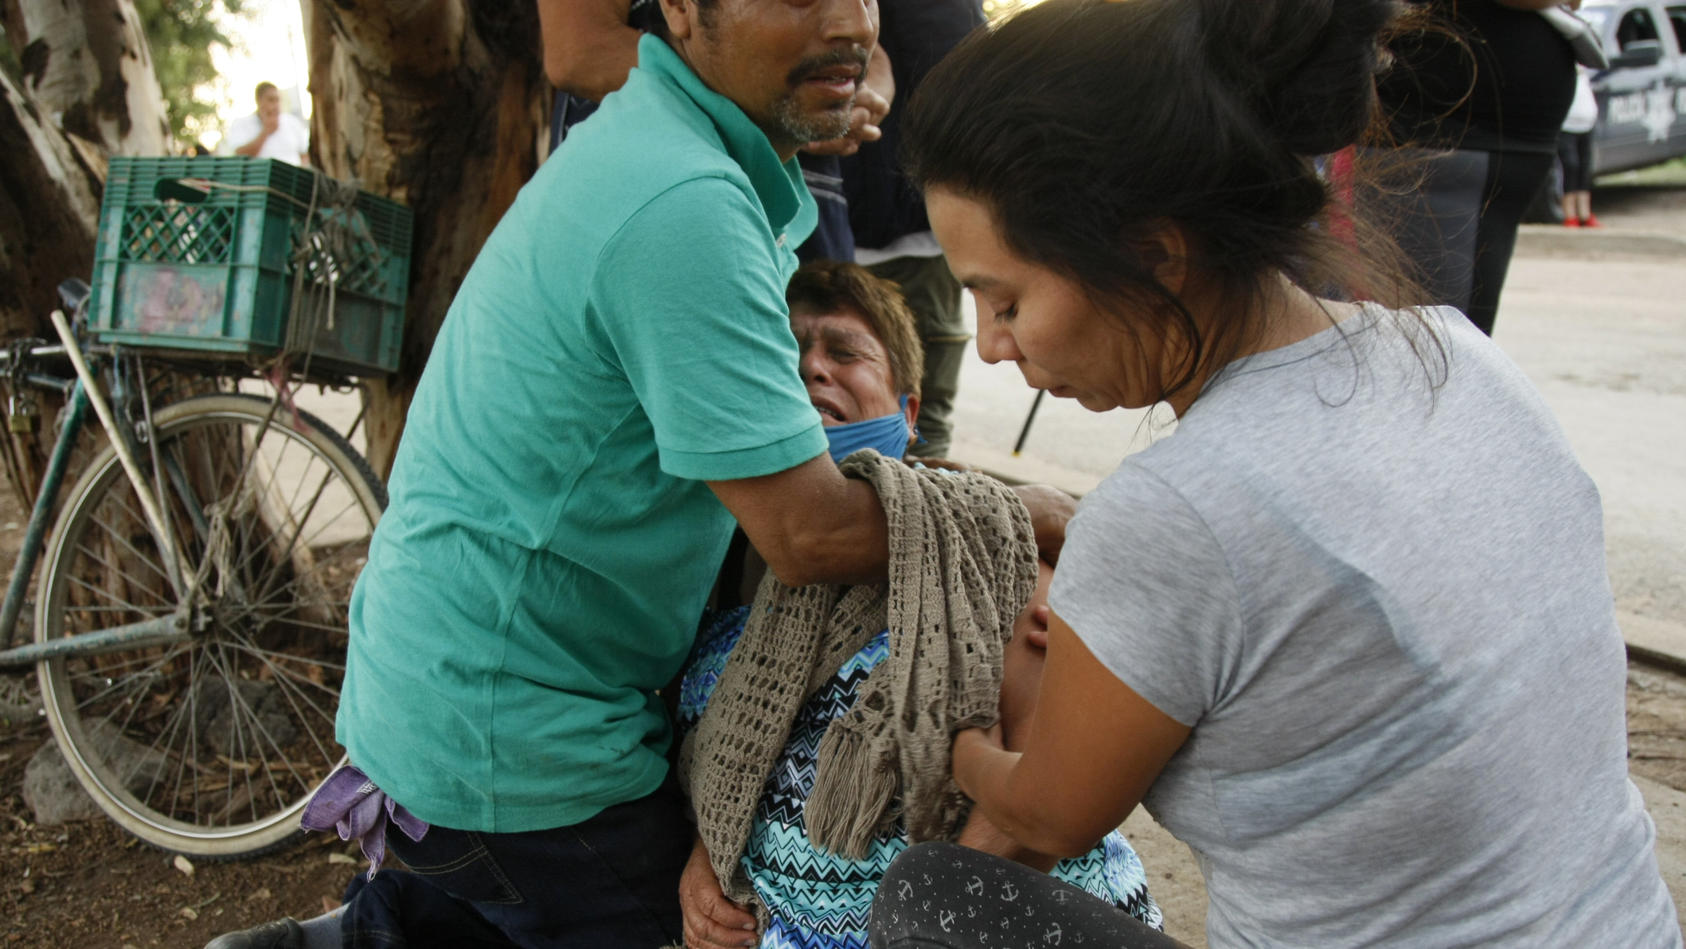 01.07.2020, Mexiko, Irapuato: Verwandte trösten eine weinende Frau vor einer Einrichtung für Suchttherapie im Einsatz. Mindestens 24 Menschen sind in einer Einrichtung für Suchttherapie in Mexiko erschossen worden. Foto: Mario Armas/AP/dpa +++ dpa-Bi